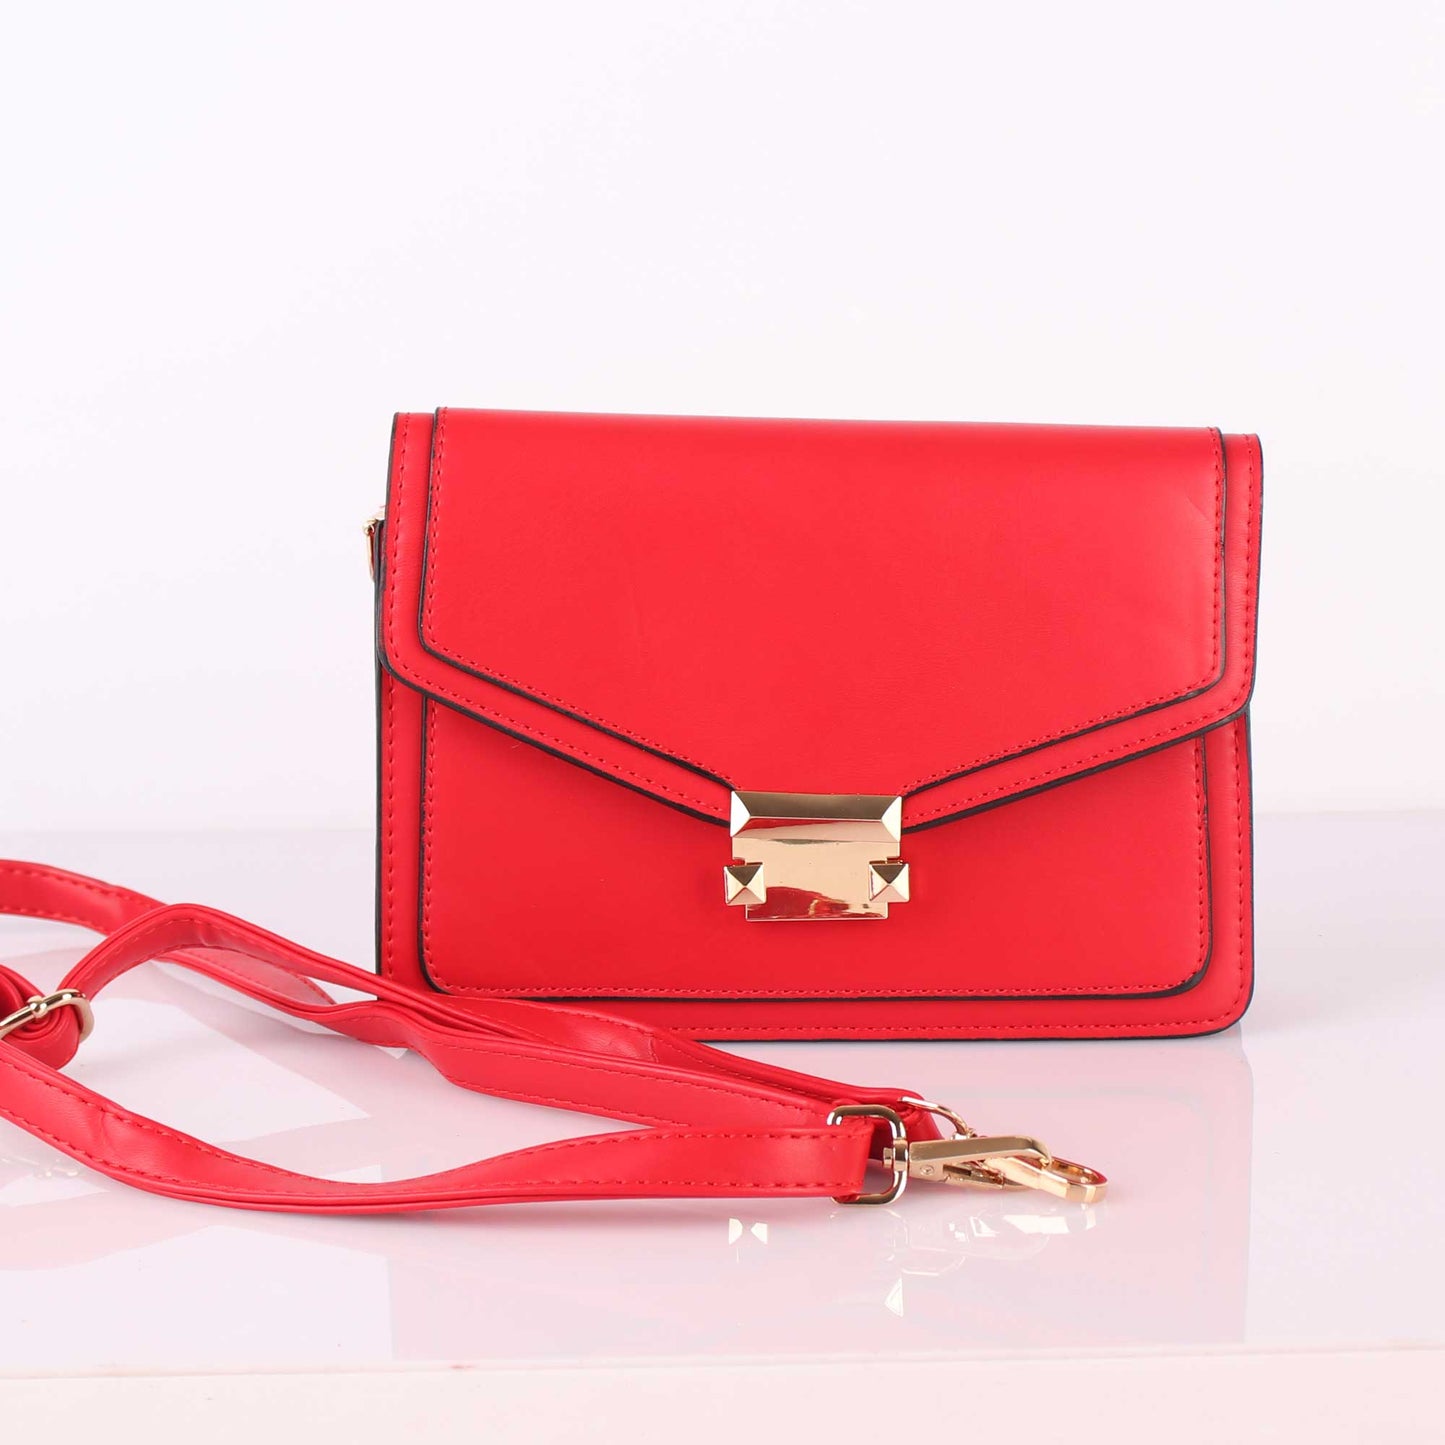 The Sassy Envelope Red Sling Bag